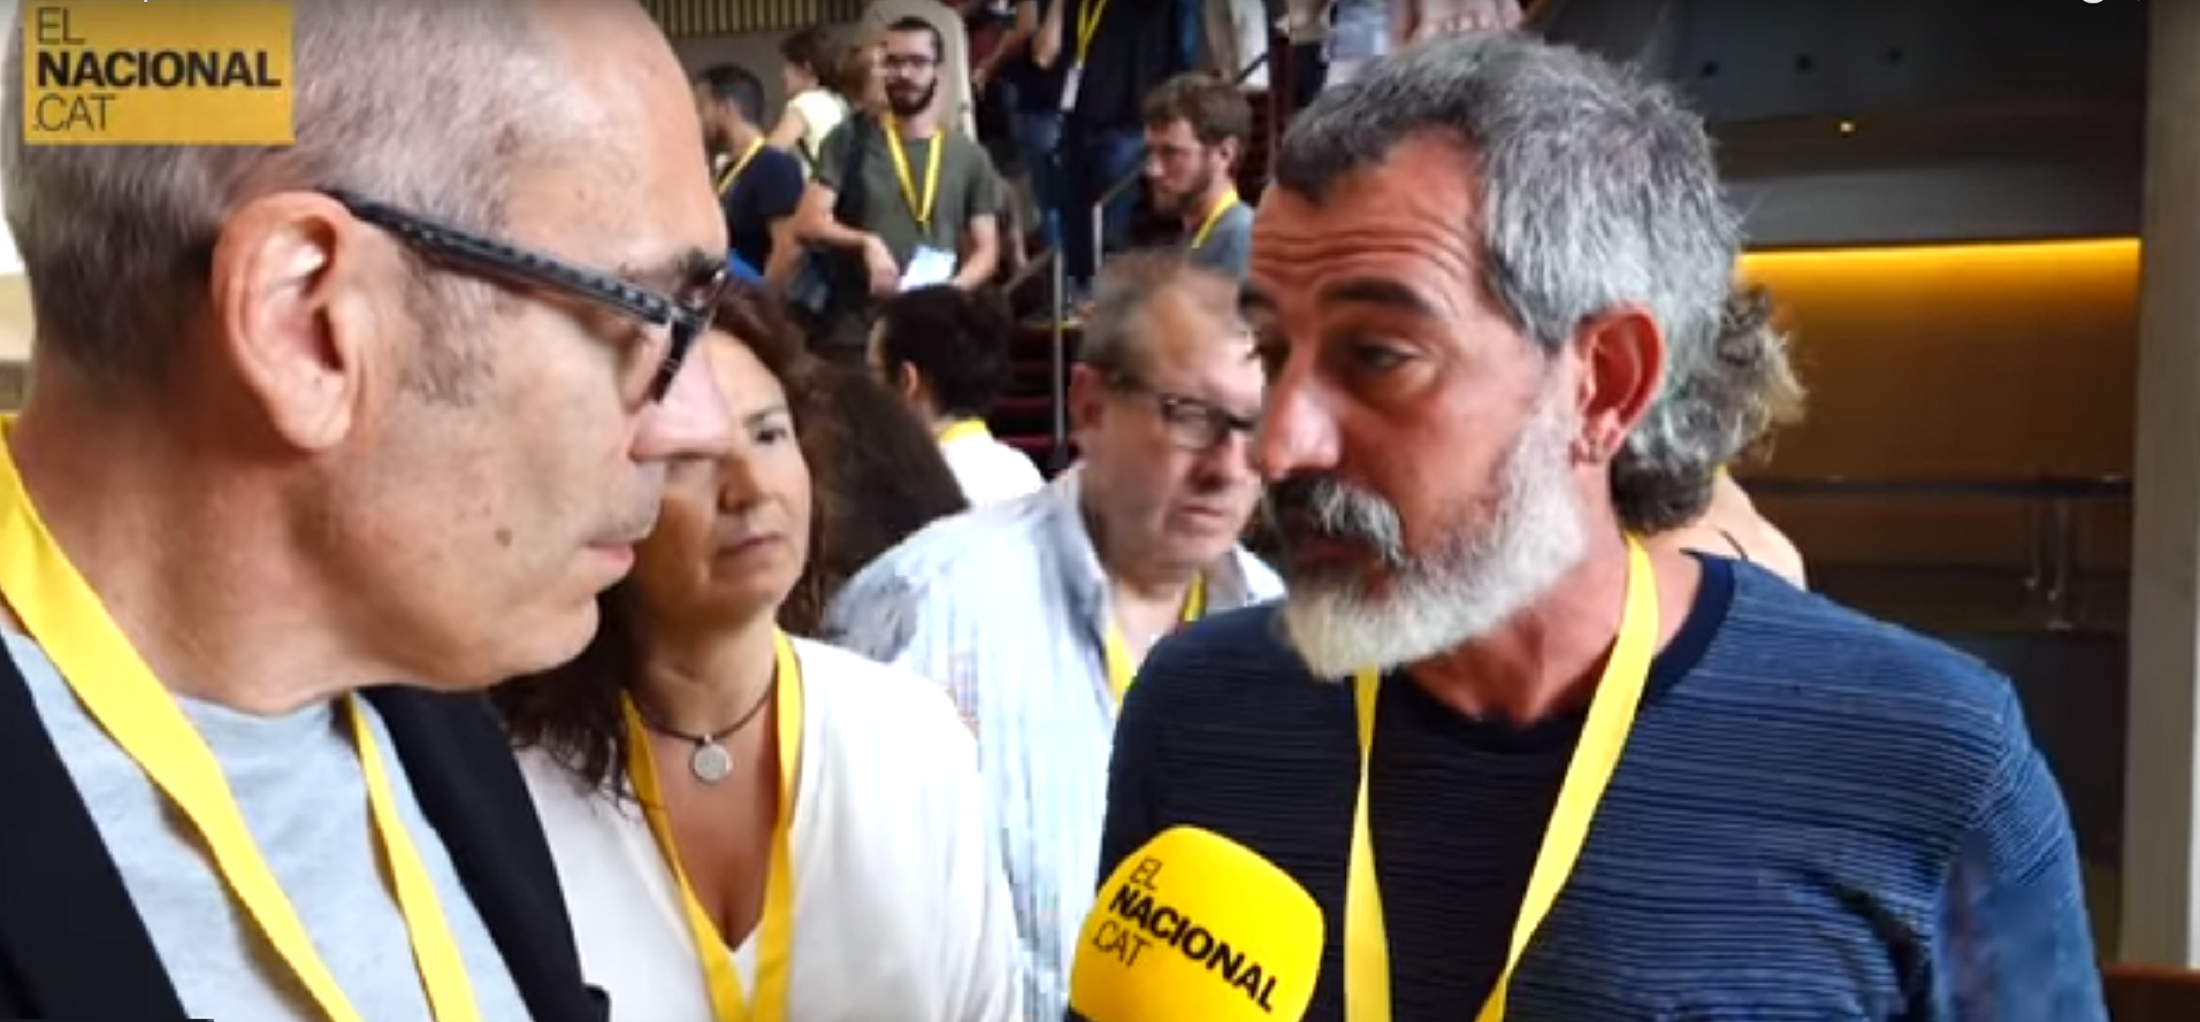 VÍDEO: L'Iu-tuber entrevista en exclusiva el líder de la candidatura alternativa al PDeCAT